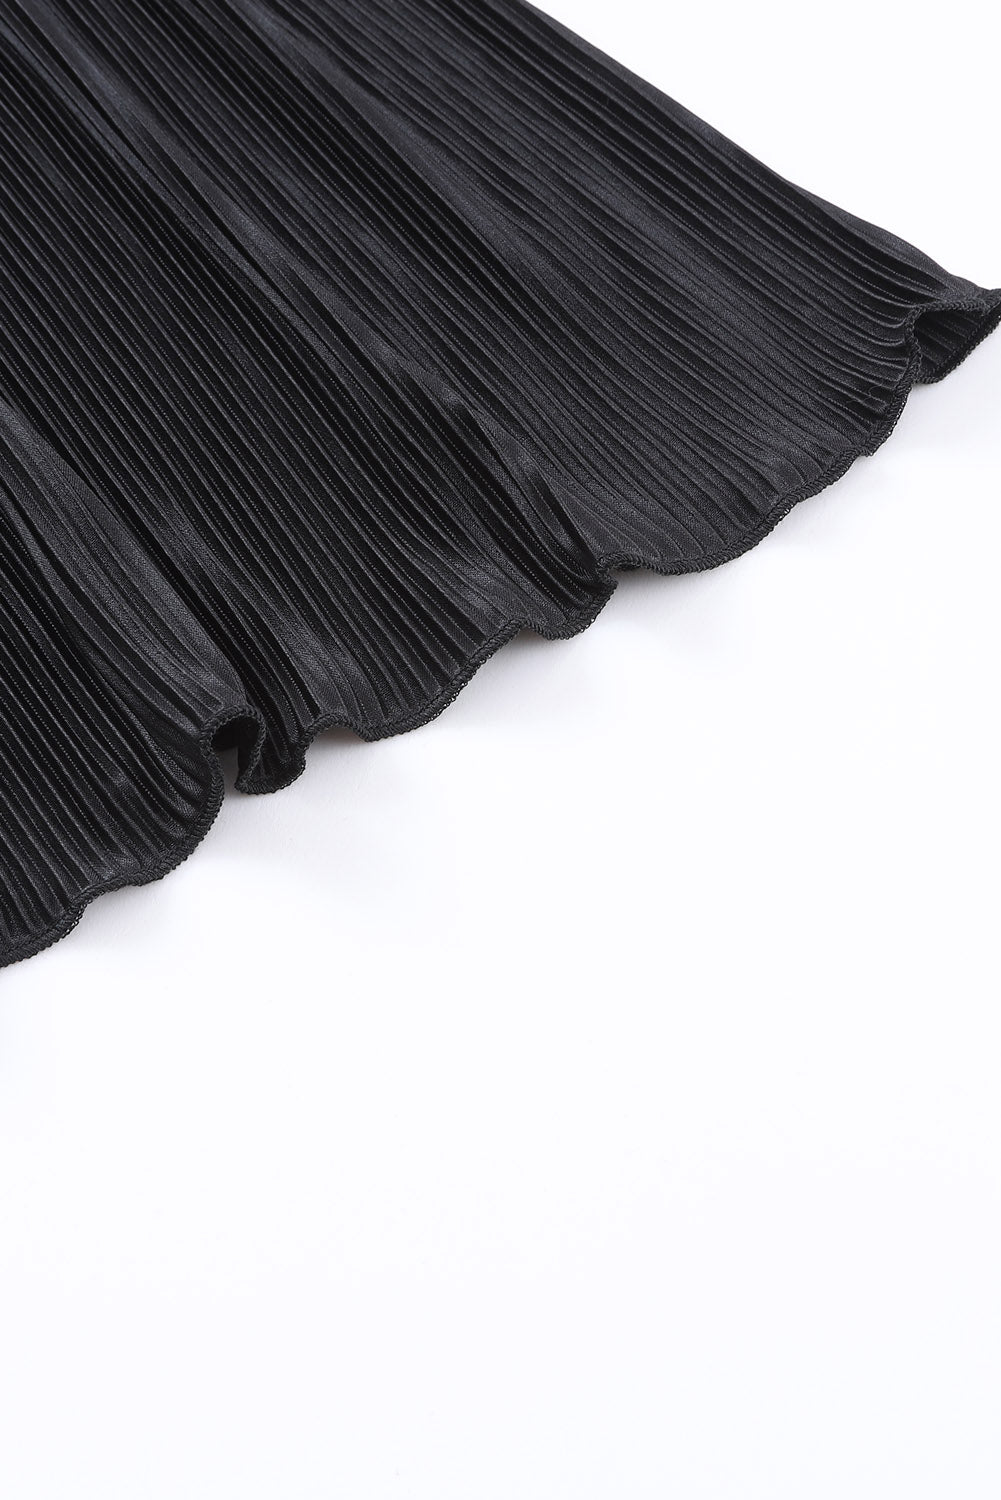 Crna plisirana košulja 3/4 rukava i salonski set kratkih hlača visokog struka